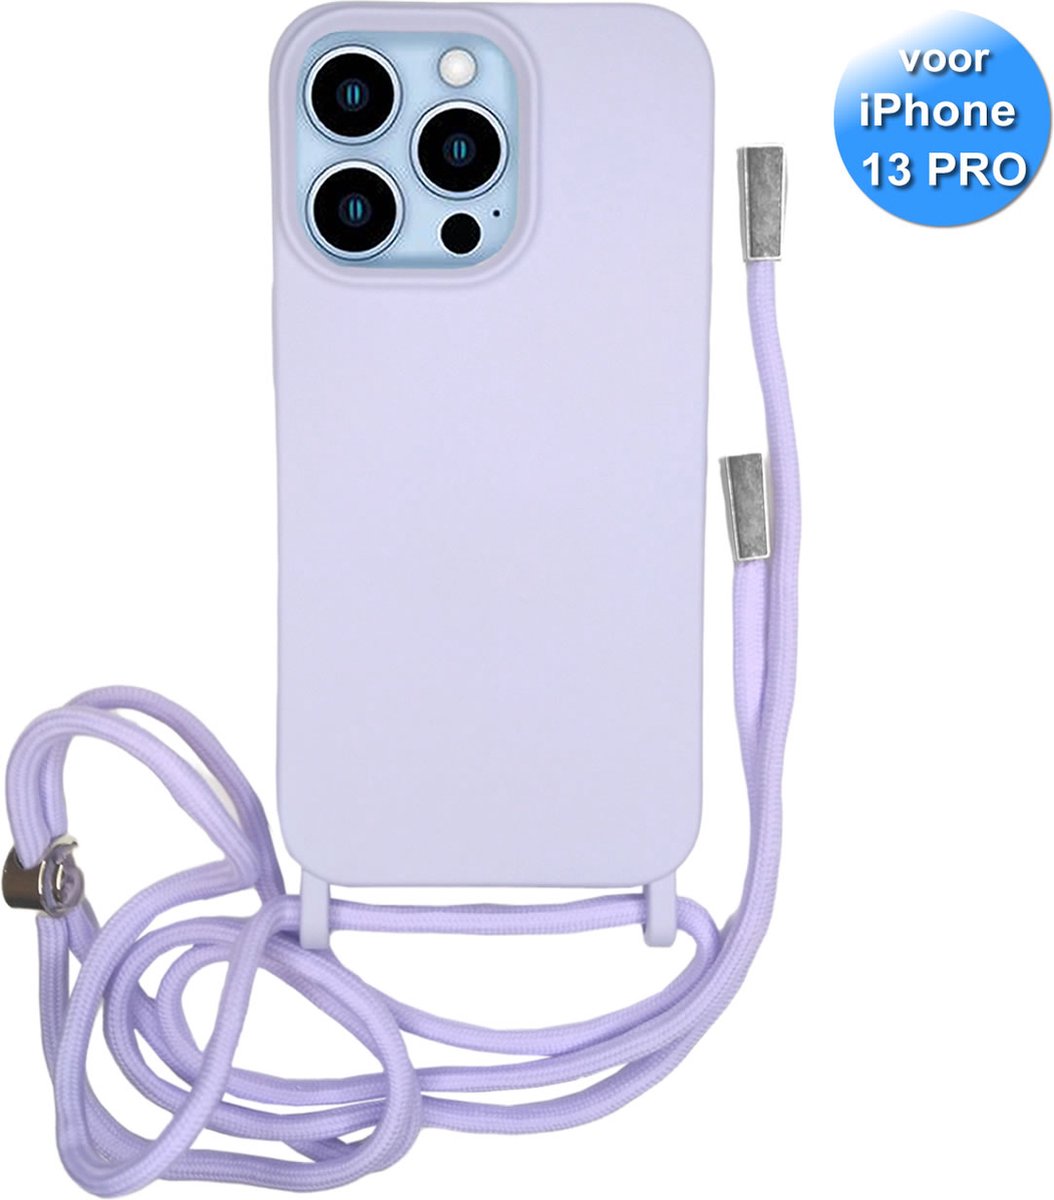 iPhone 13 Pro Hoesje - Met Koord - Siliconen - Lila / Paars